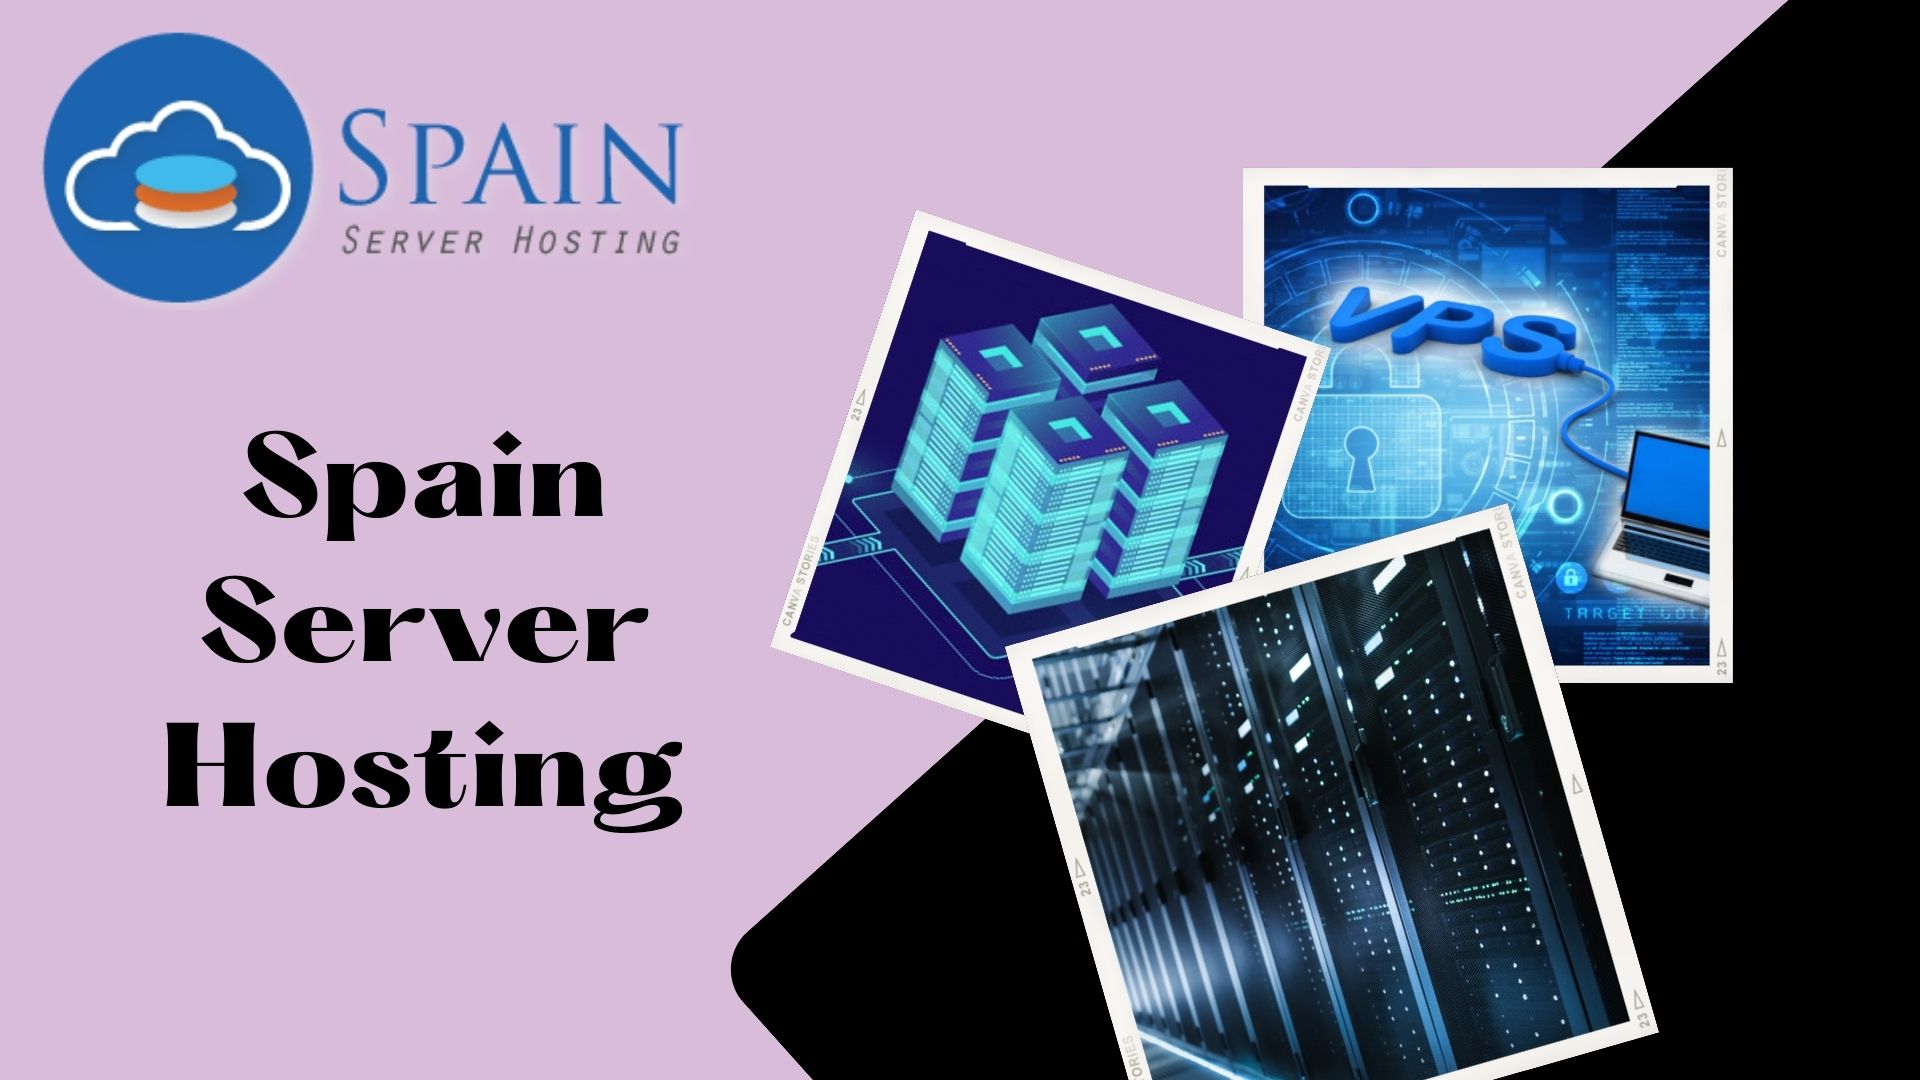 Spain Server Hosting